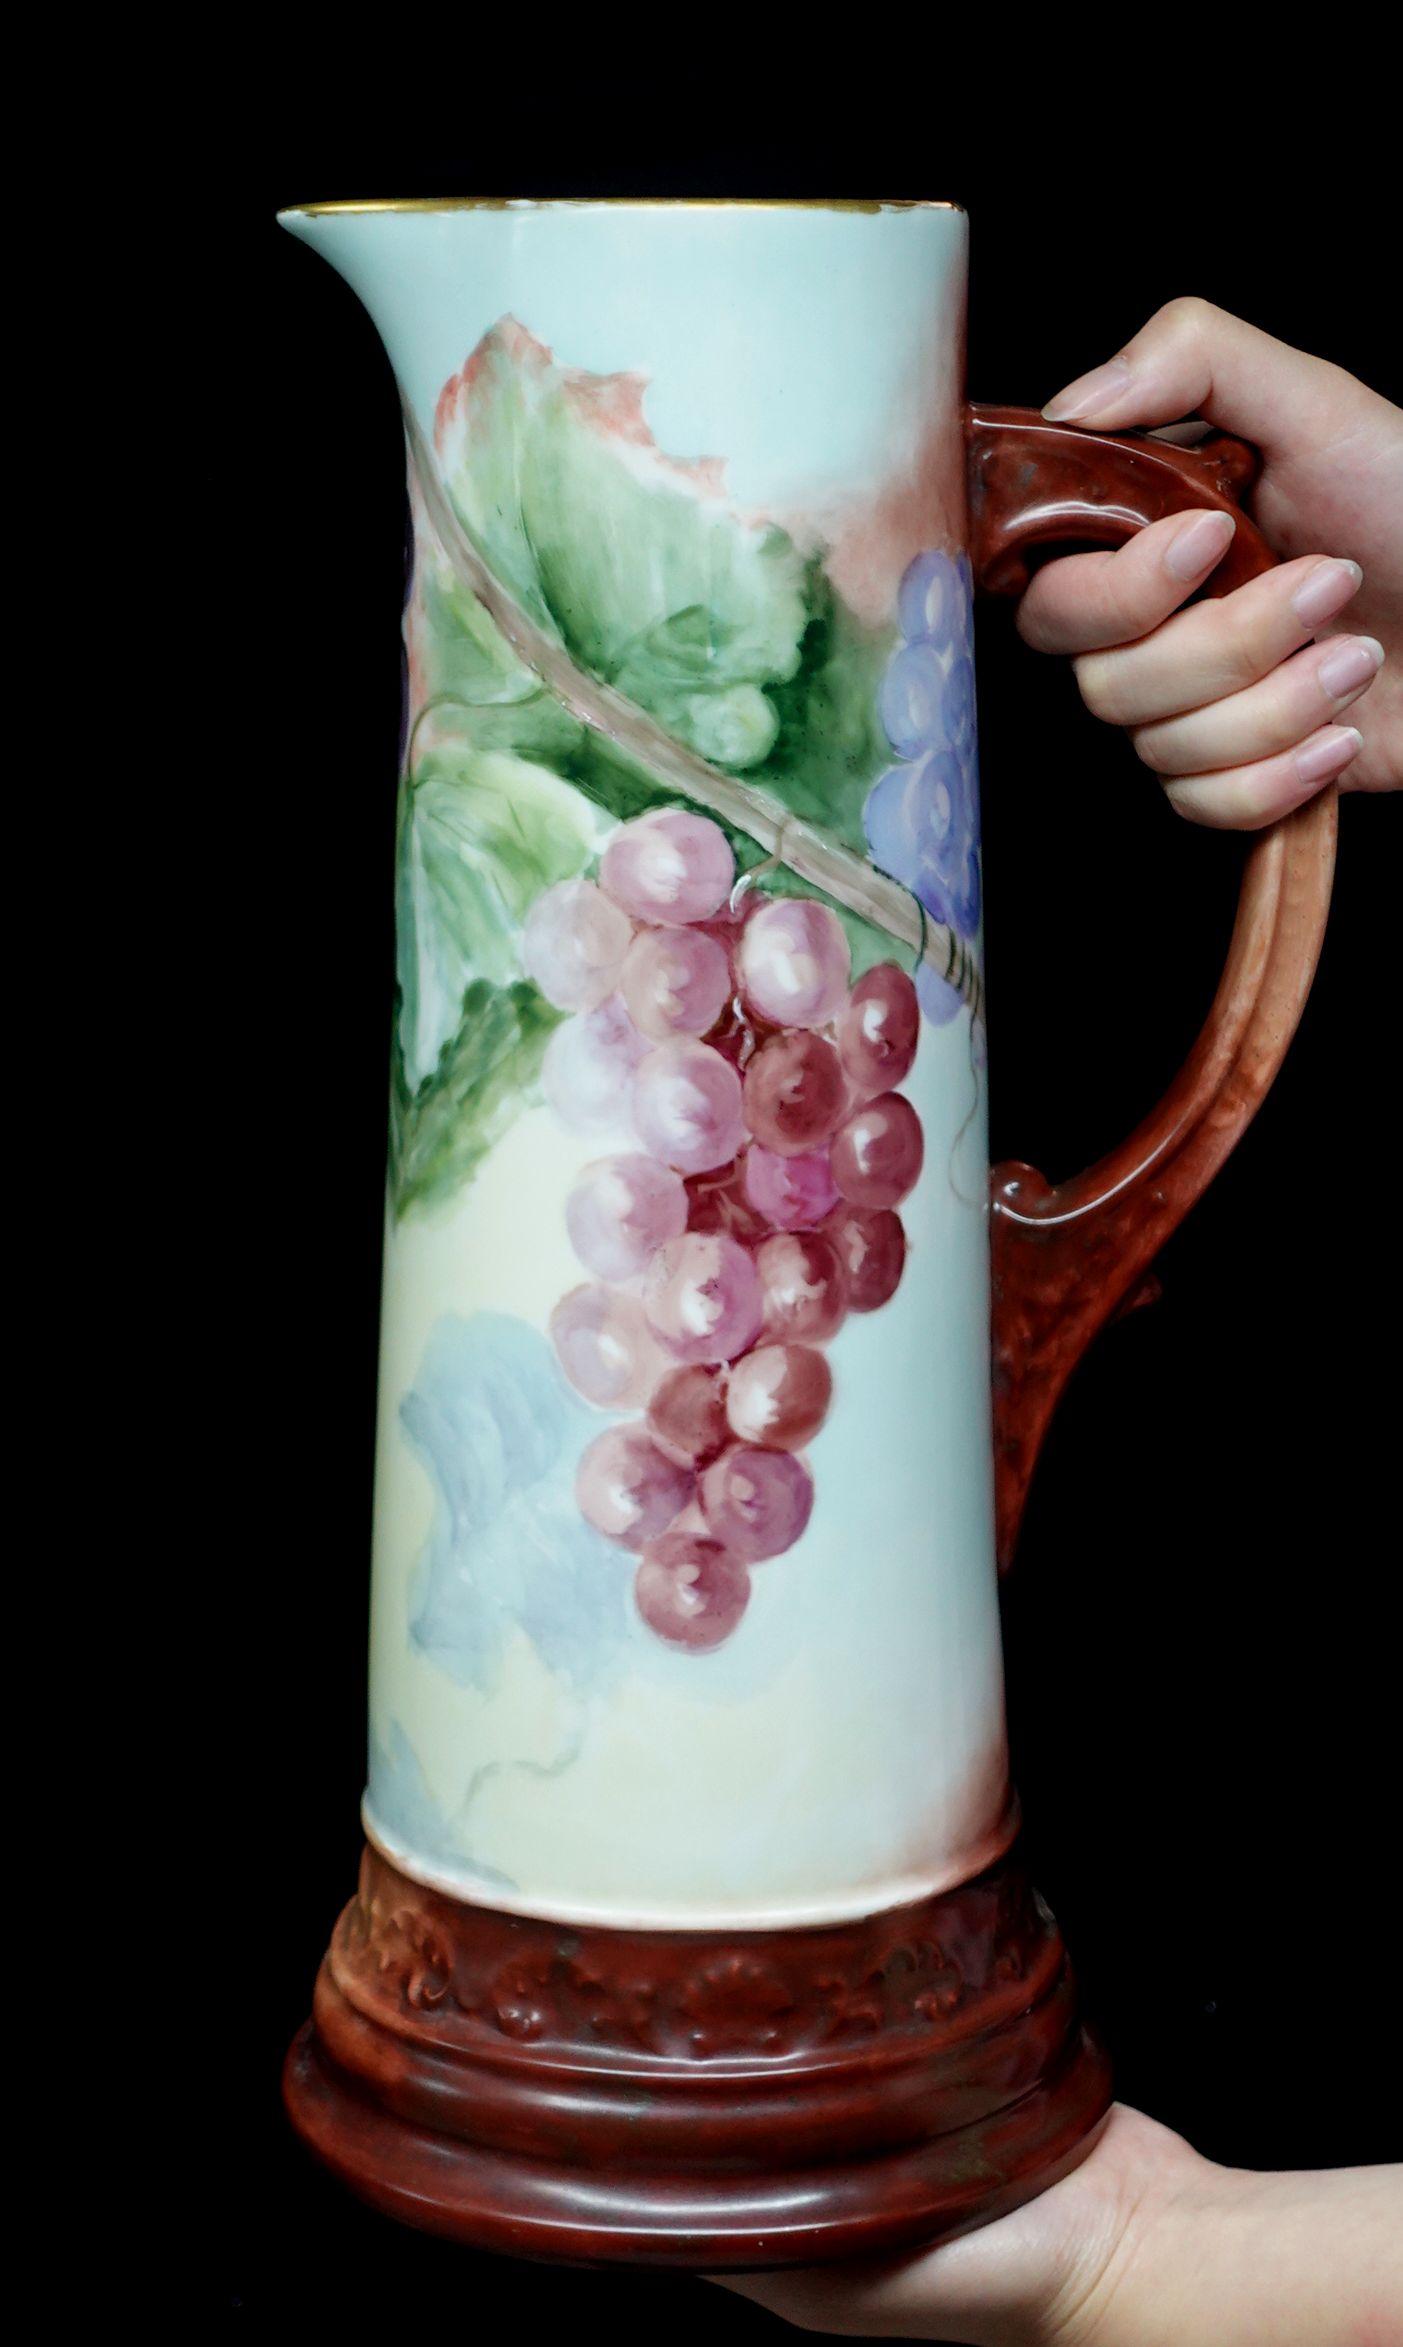 Un merveilleux grand antique français Jean Pouyat Limoges figural porcelaine décorée tankard offre un bord festonné absolument 100% peint à la main des raisins en brun-rouge, violet, et riche feuilles vertes, l'arrangement délicat de la composition,